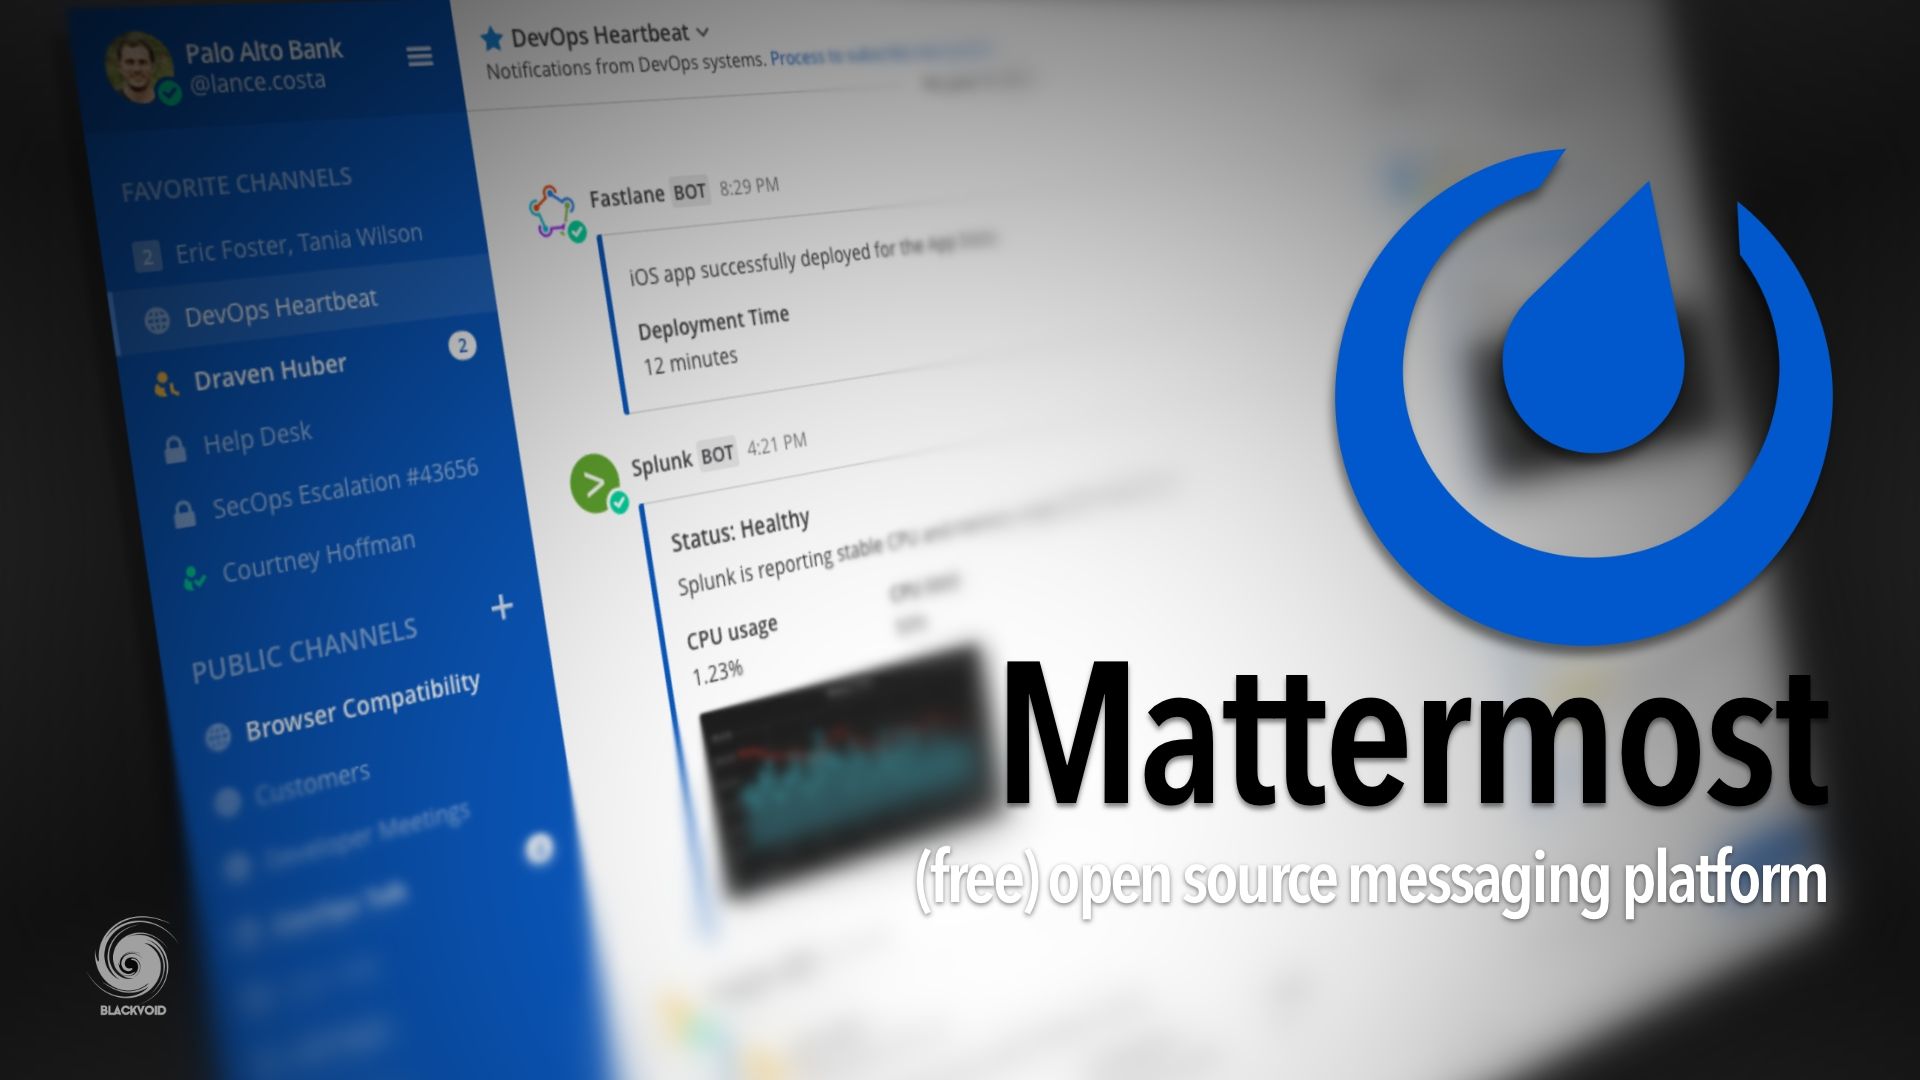 Mattermost - (free) open-source messaging platform